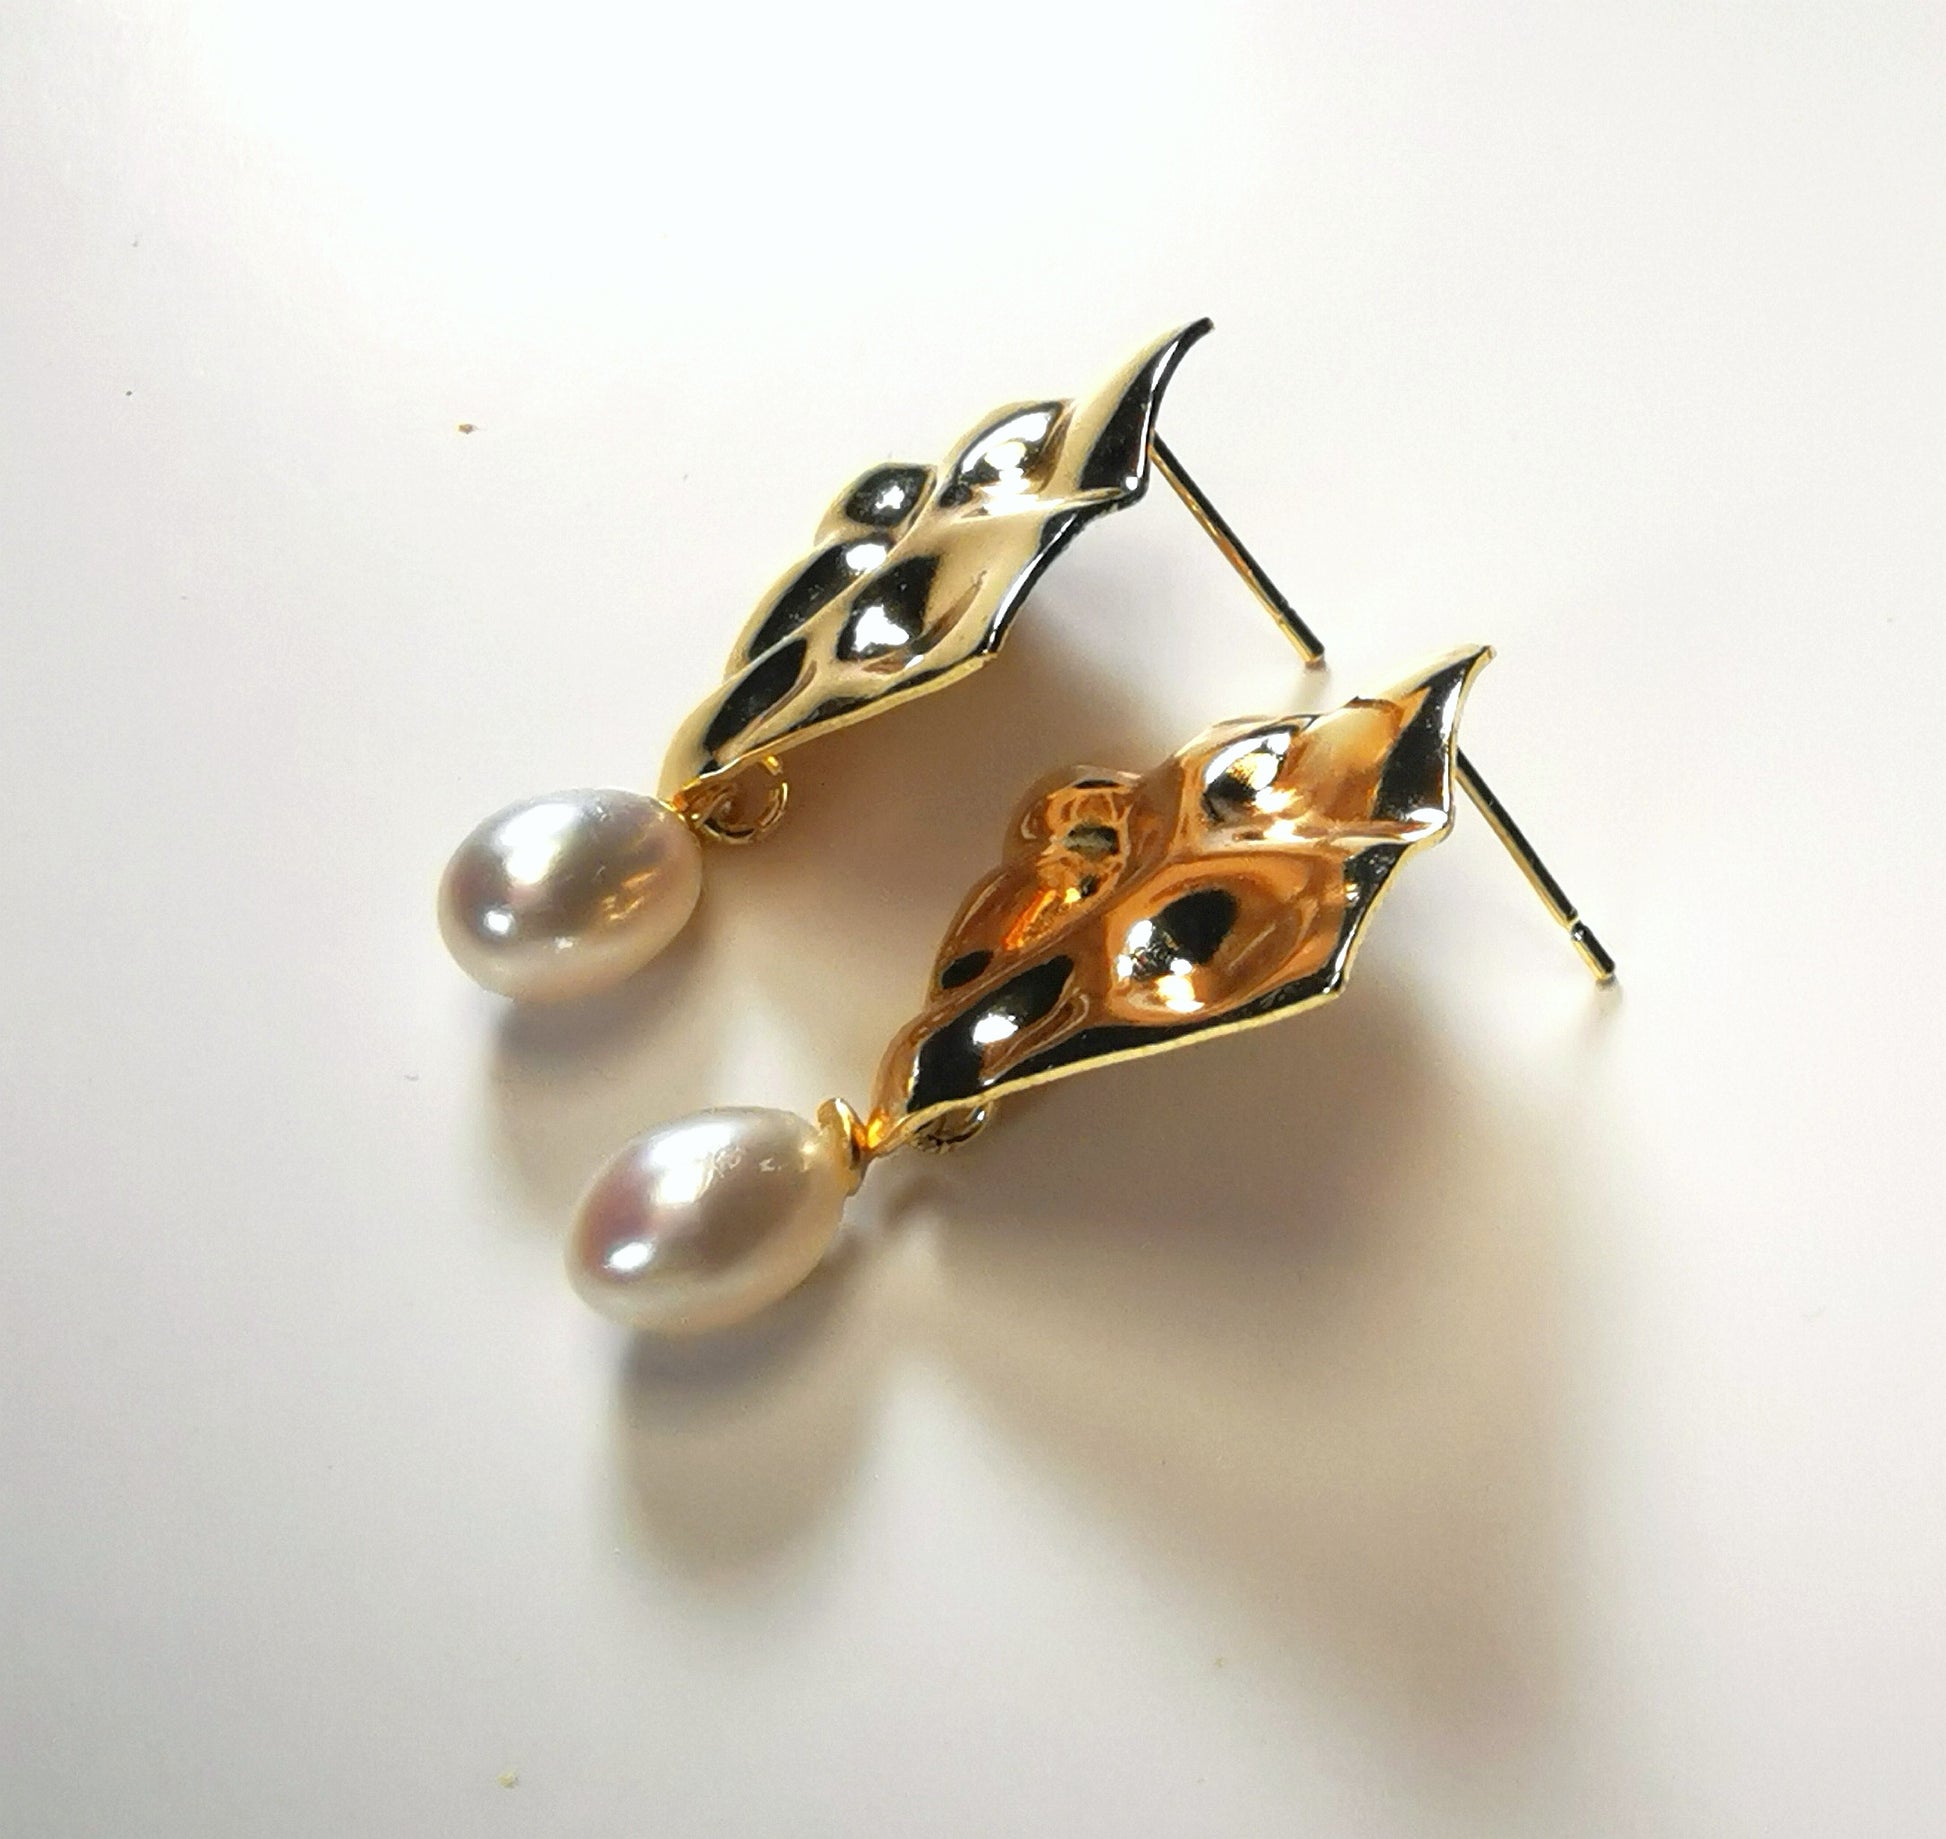 Boucles d'oreilles composées d'un carré martelé de 18mm, plaqué or, sur clou, sous lequel est suspendue une perle blanche , ovale 7-9mm. Présentées posées sur un fond blanc, cote à cote, posées sur le flanc gauche des carrés. Vue de la gauche